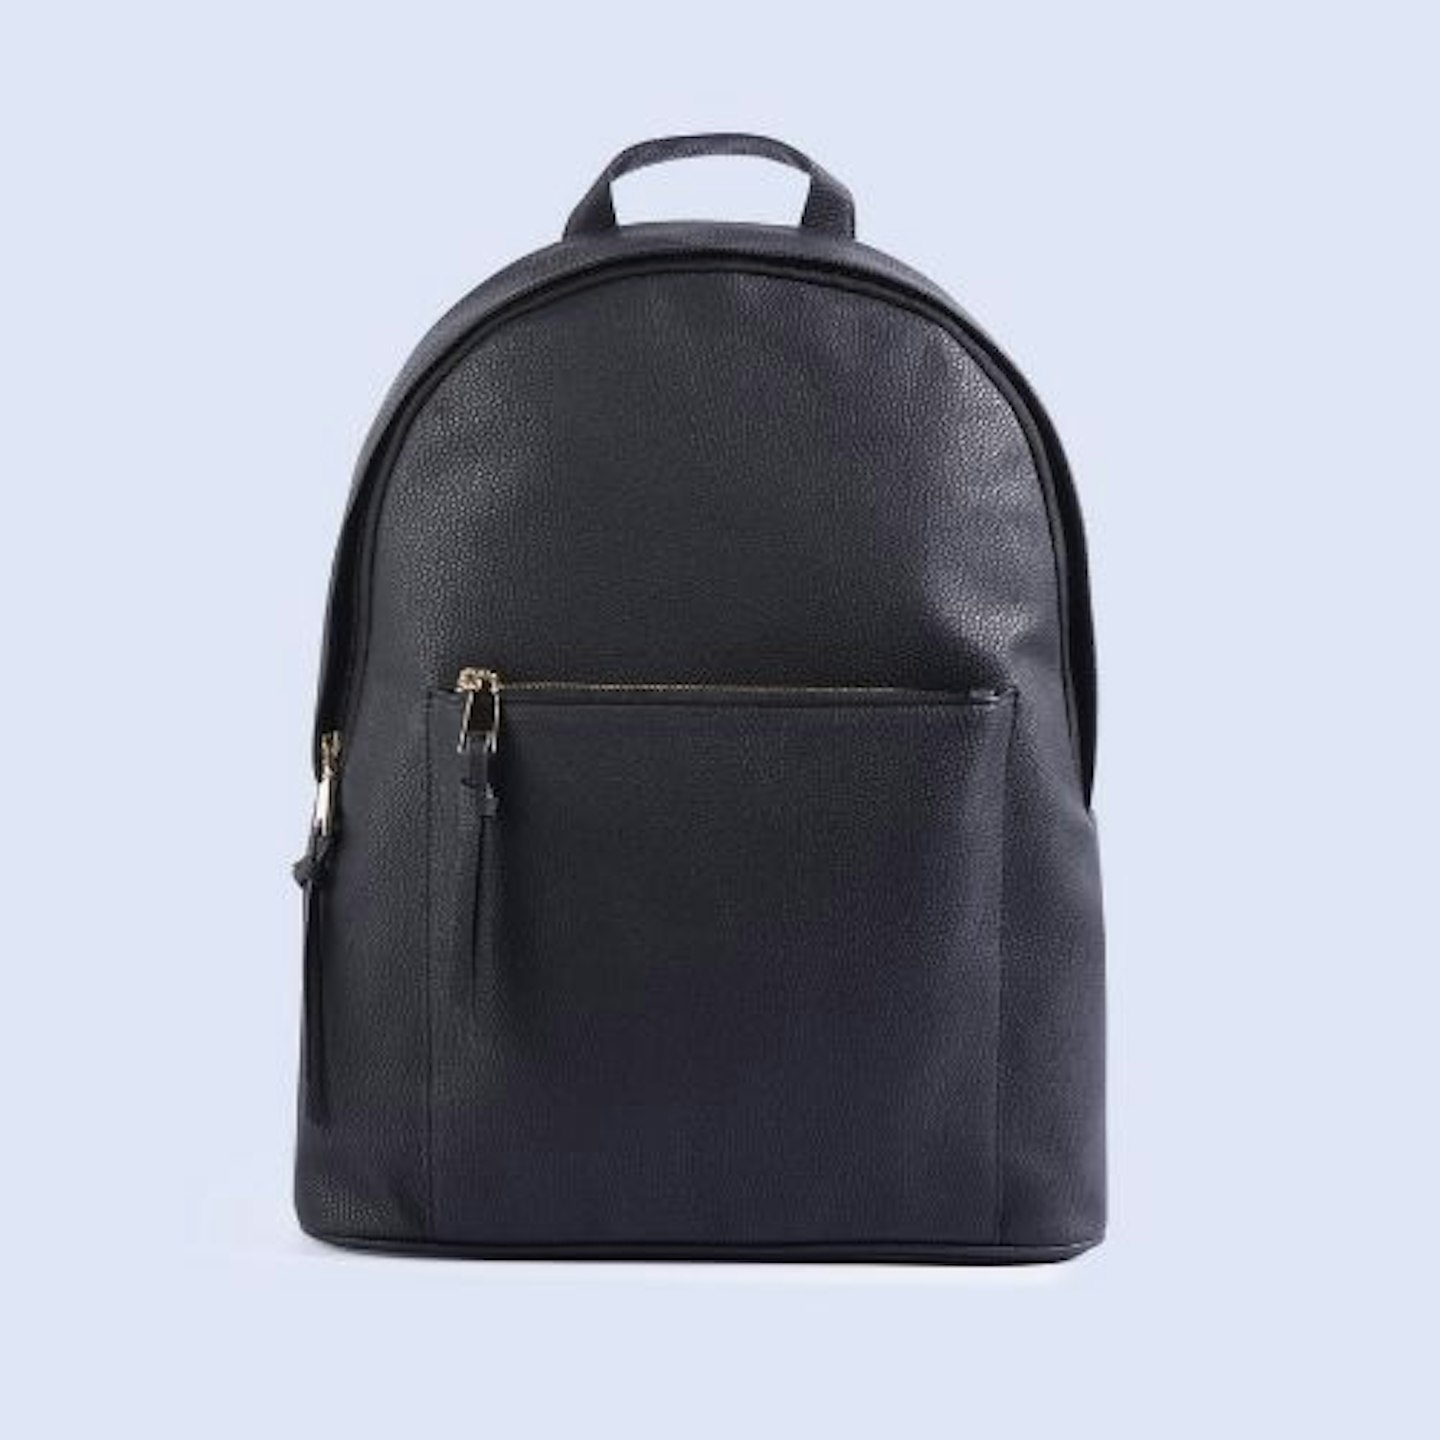 Black Leather-Look Zip Backpack